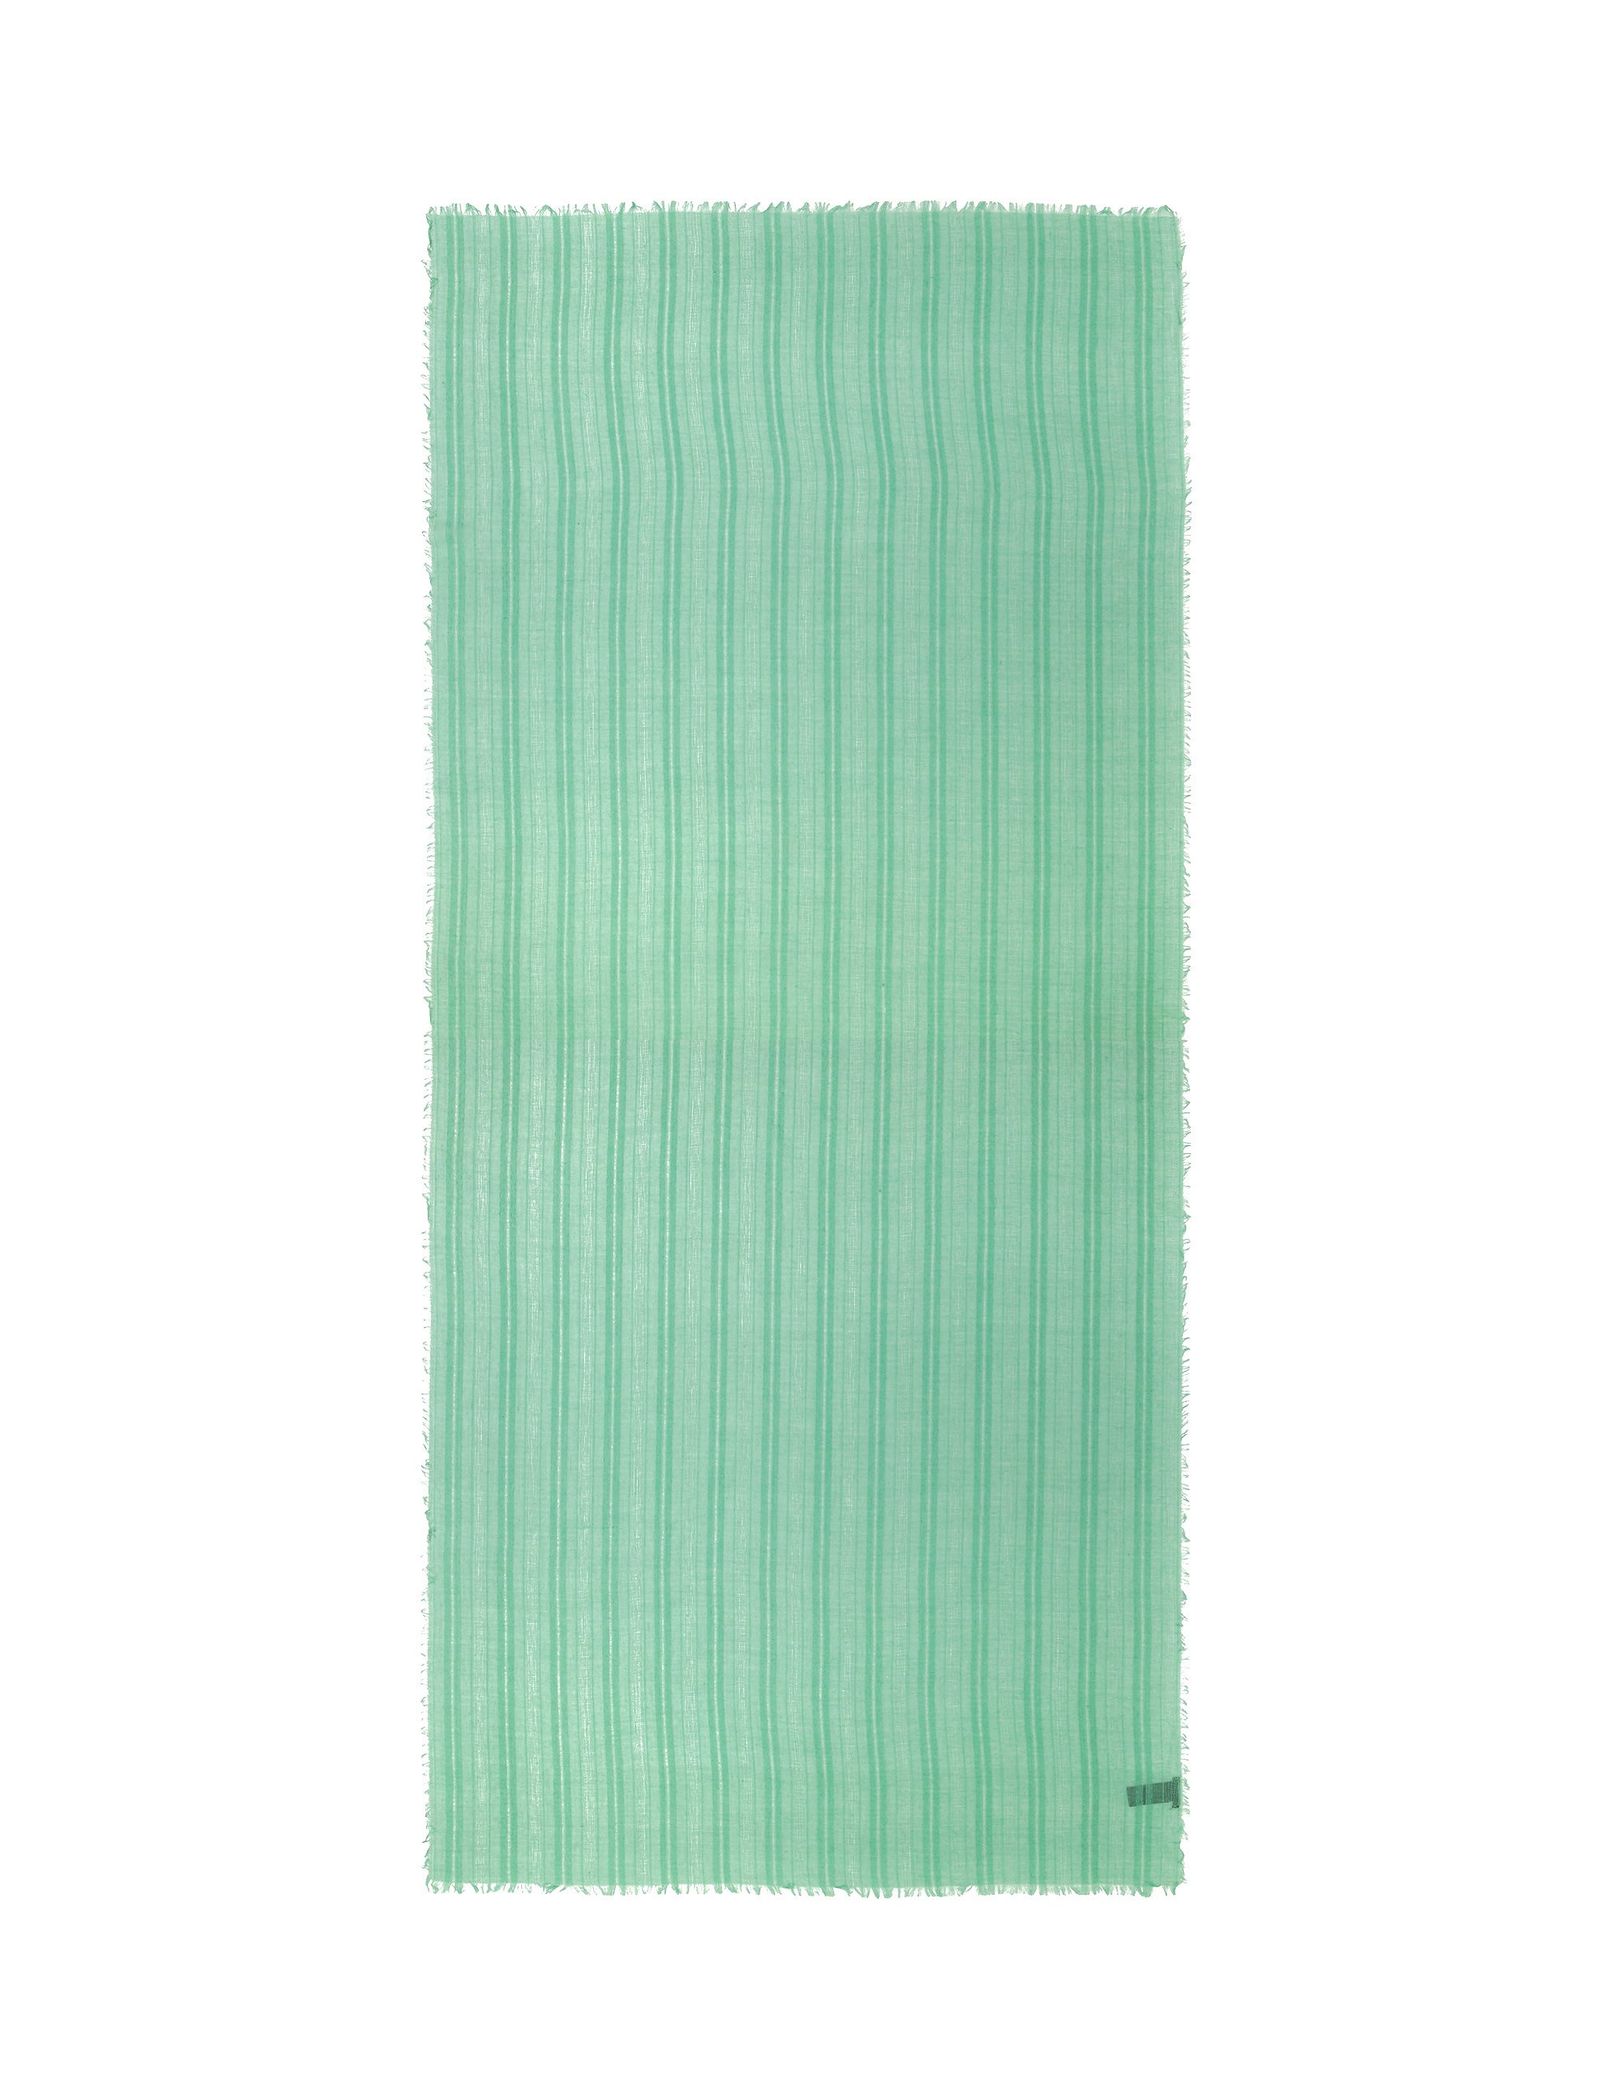 شال ساده زنانه - پارفوا - سبز آبي روشن - 1